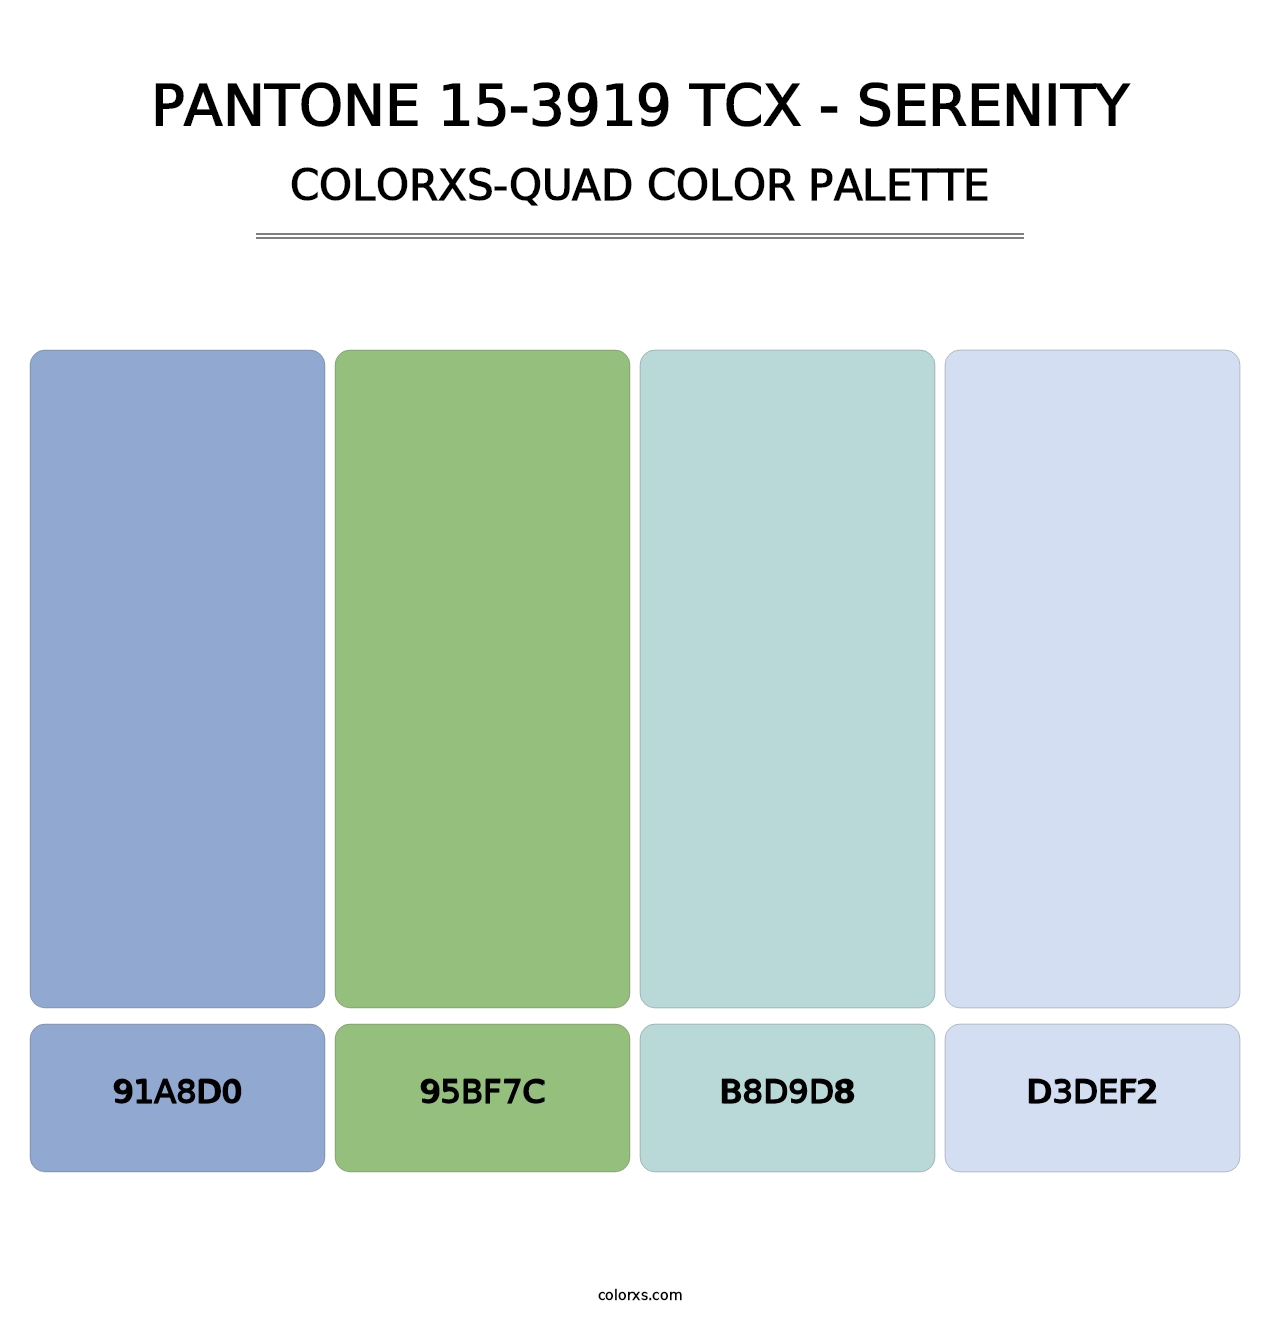 PANTONE 15-3919 TCX - Serenity - Colorxs Quad Palette